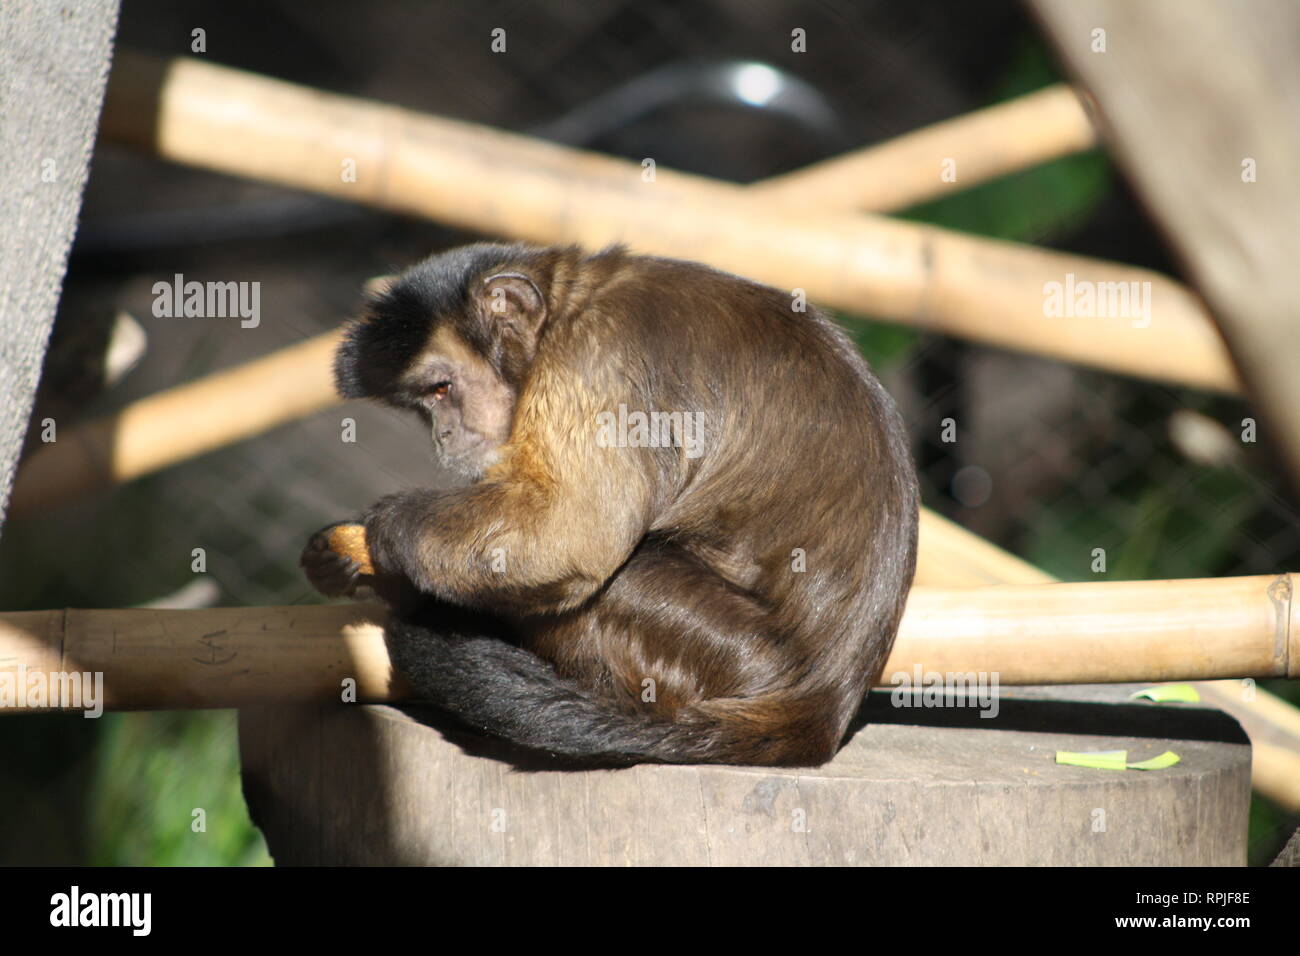 Capuchin Monkey, Brown Monkey, San Diego Zoo, San Diego California Stock Photo